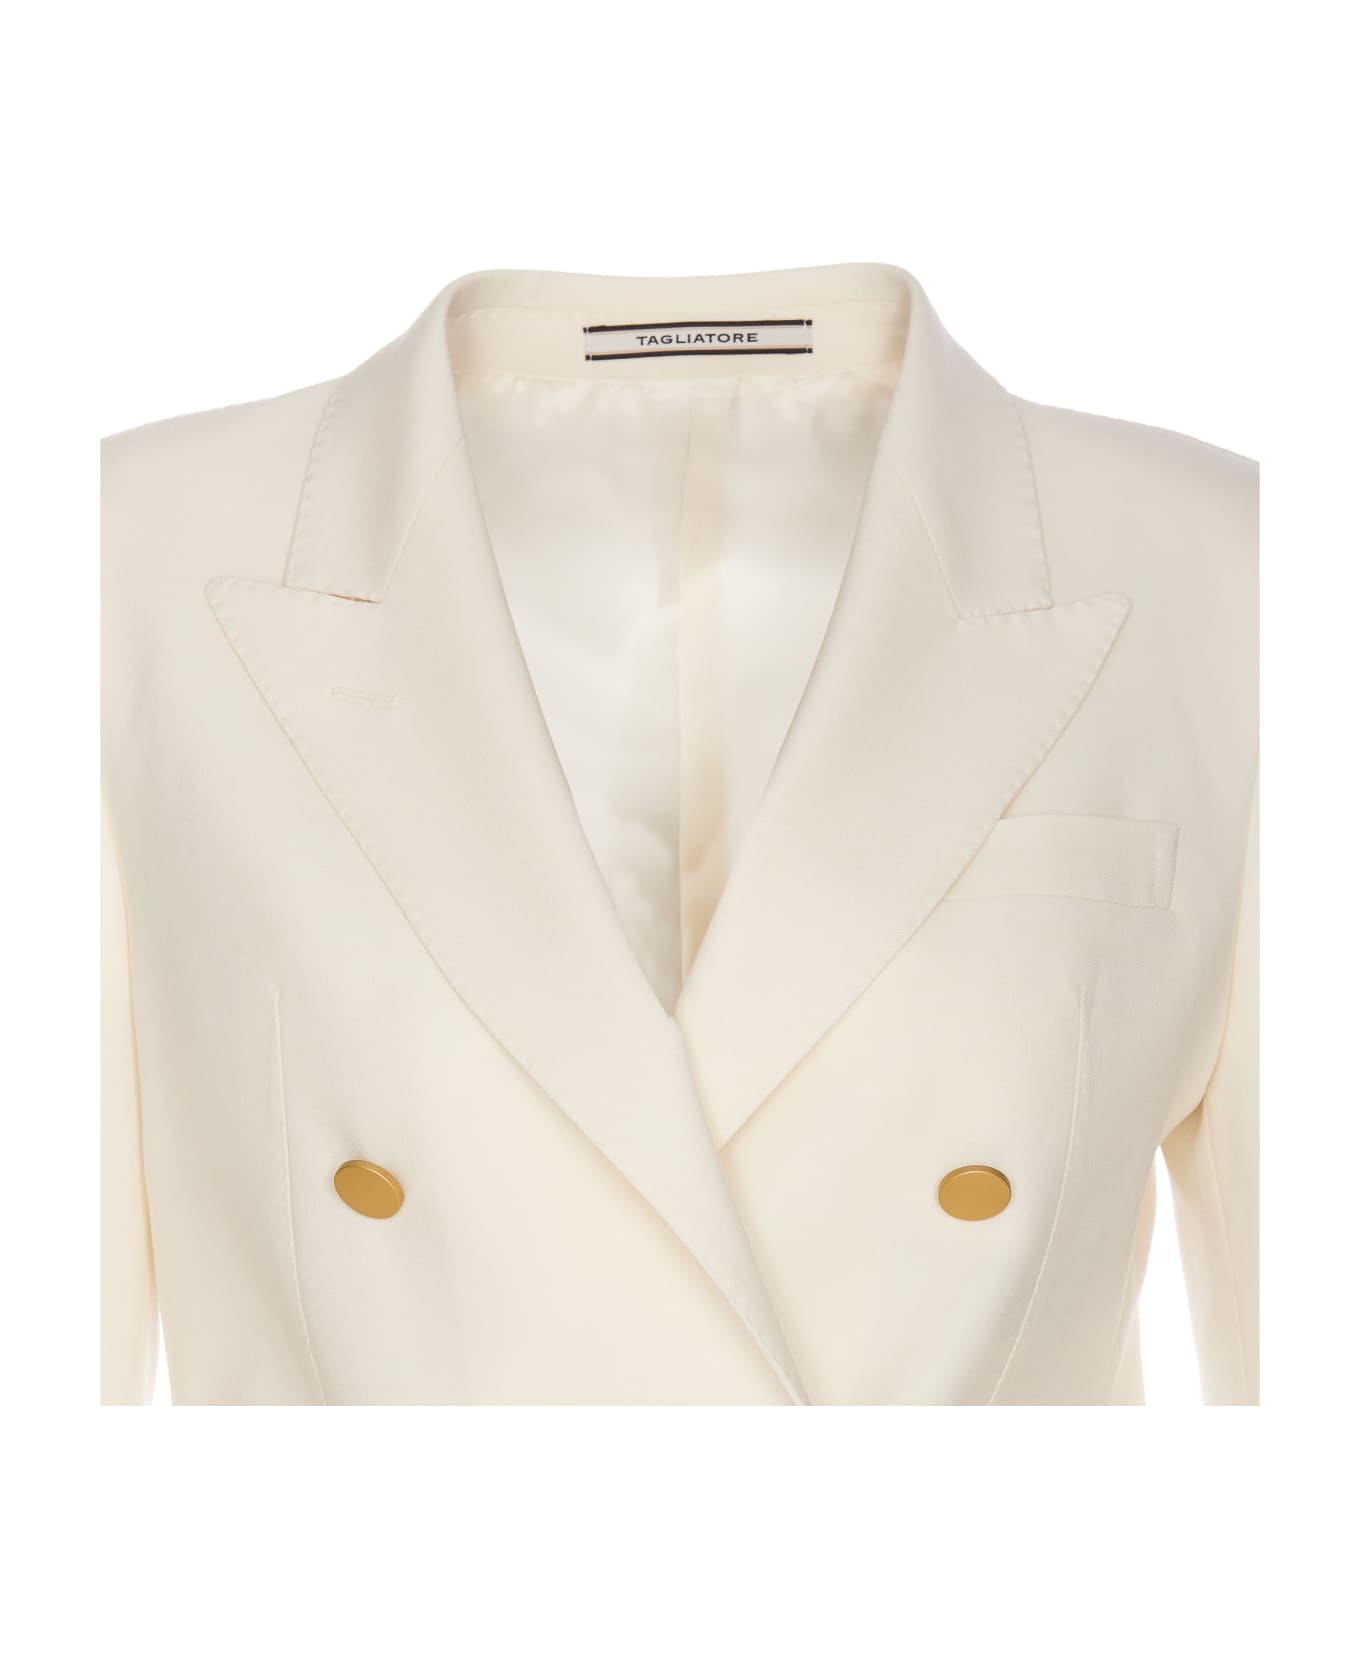 Tagliatore T-parigi Suit - White